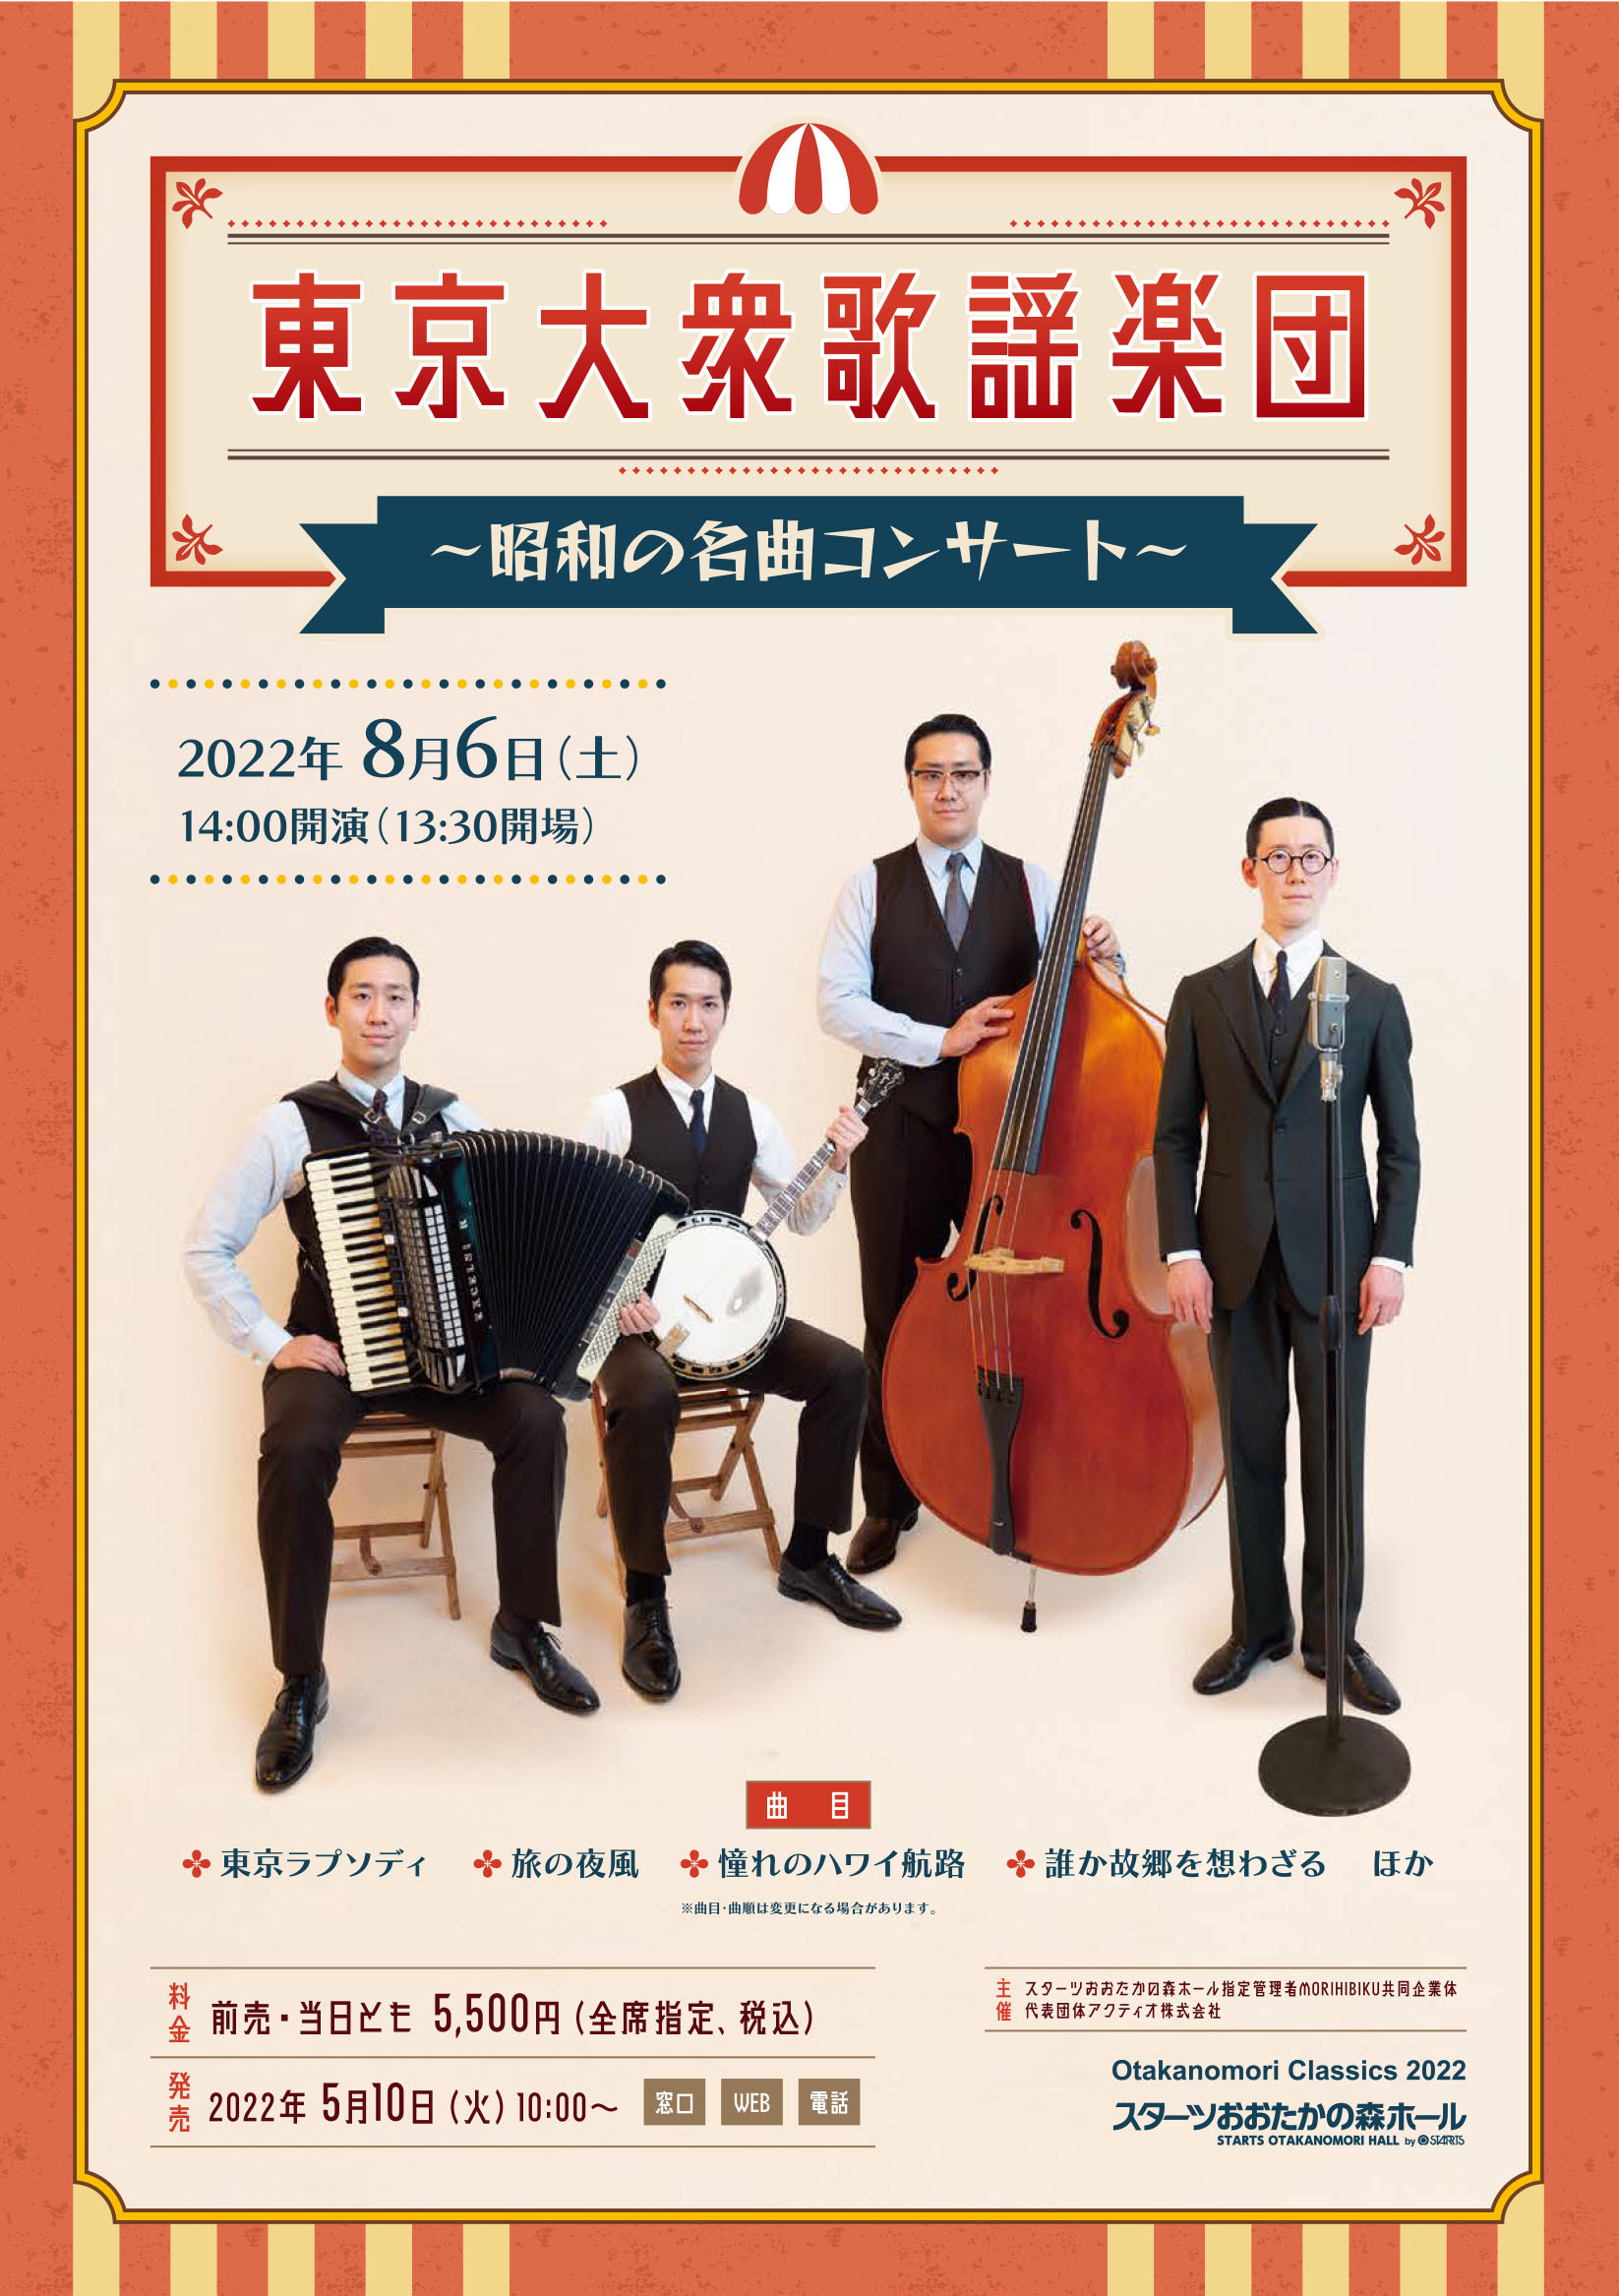 若い世代のファンも増加中 兄弟4人組バンド『東京大衆歌謡楽団 